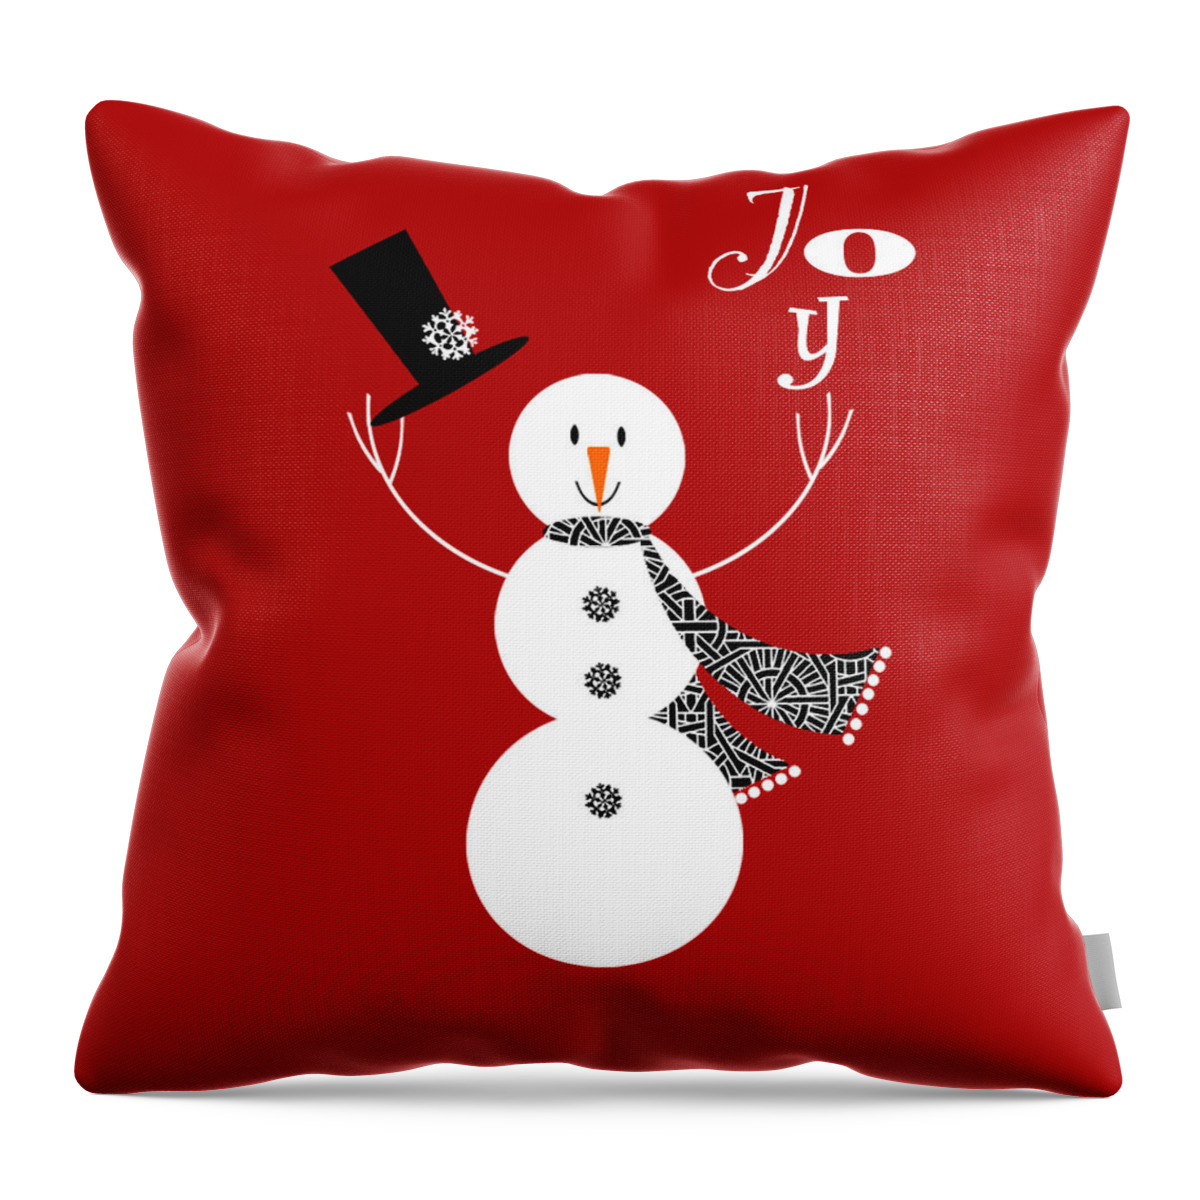 Snowman Throw Pillow featuring the digital art Joyful Snowman by Valerie Drake Lesiak